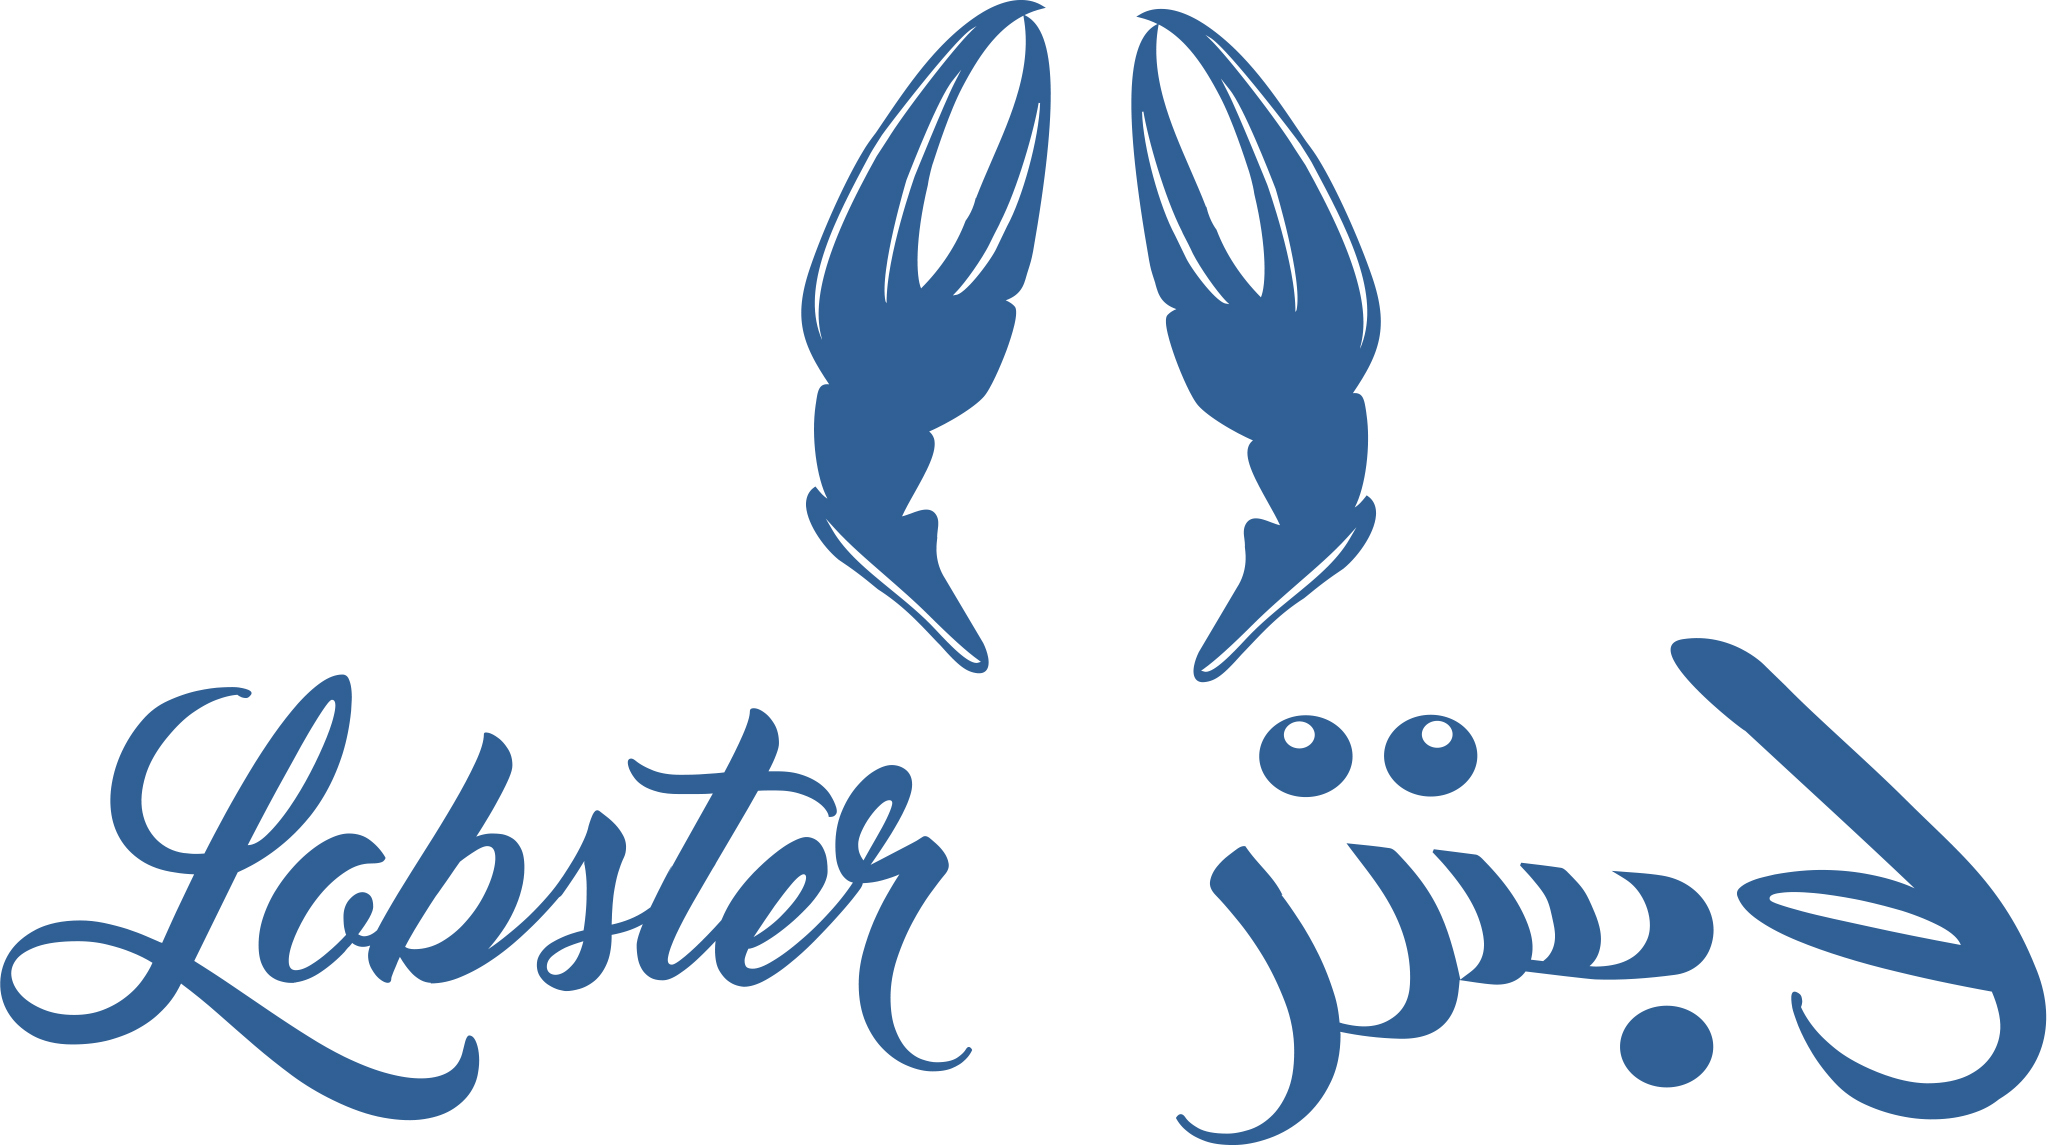 LobsterRestaurant